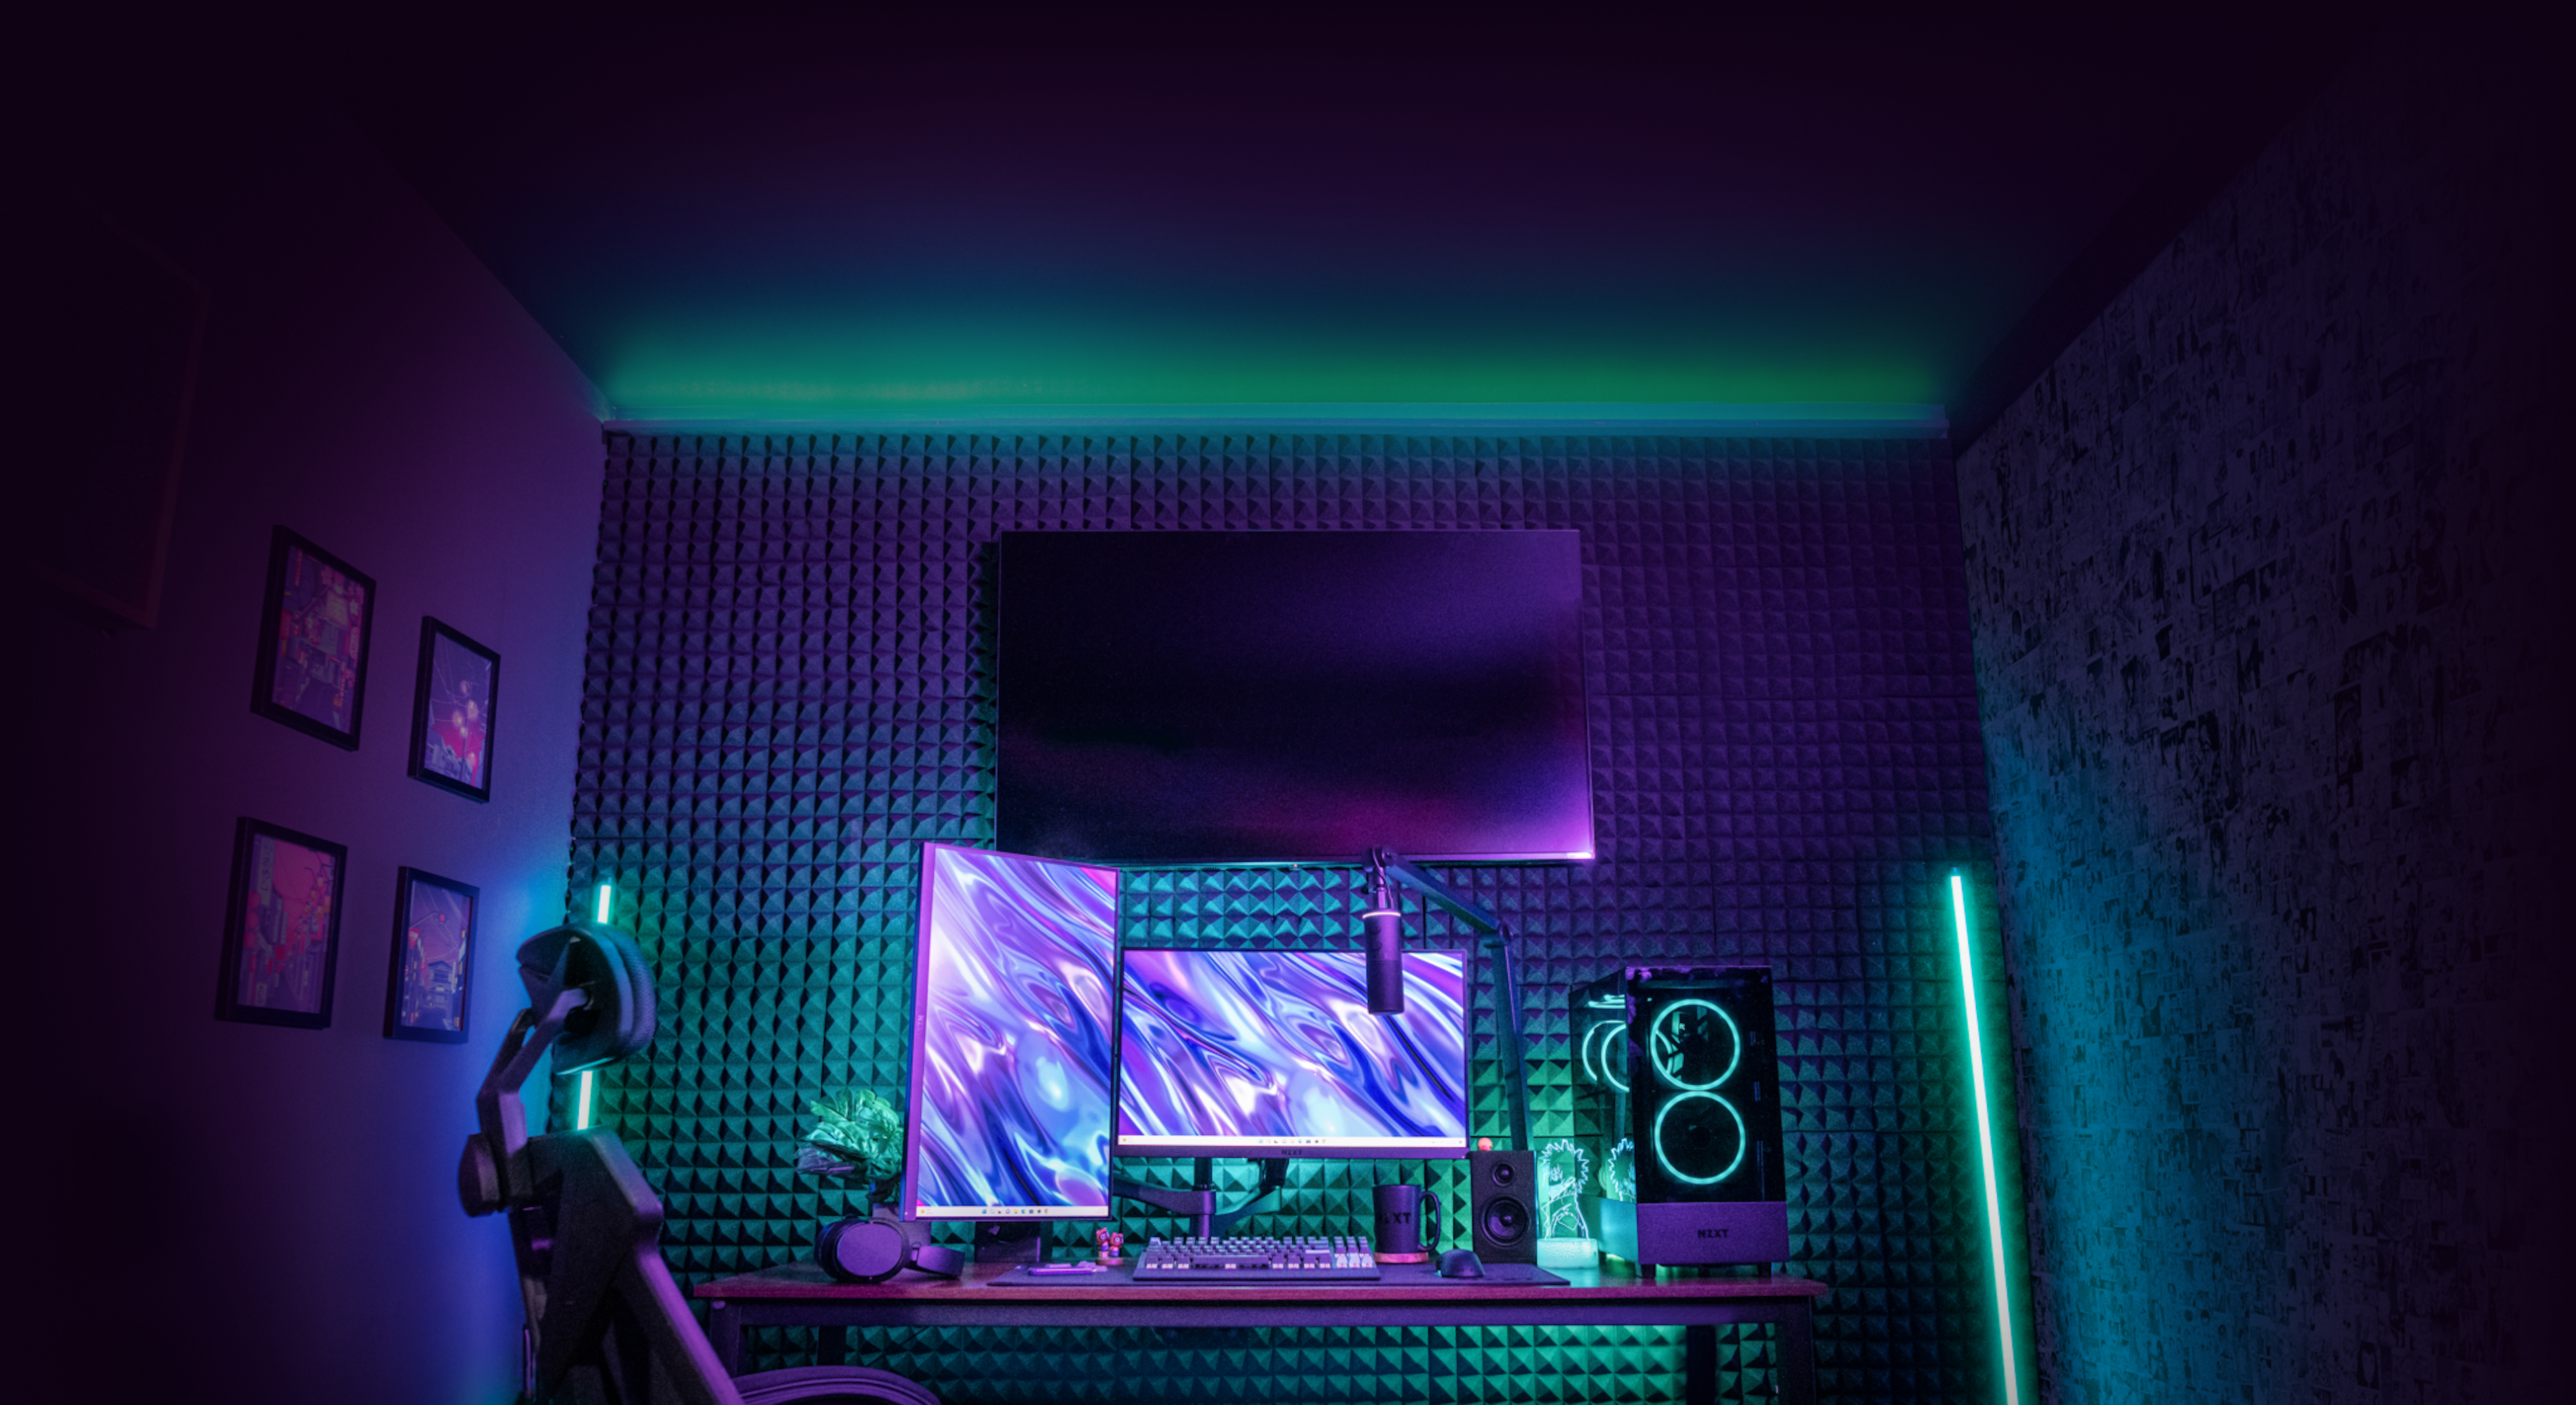 PC Desk Setup